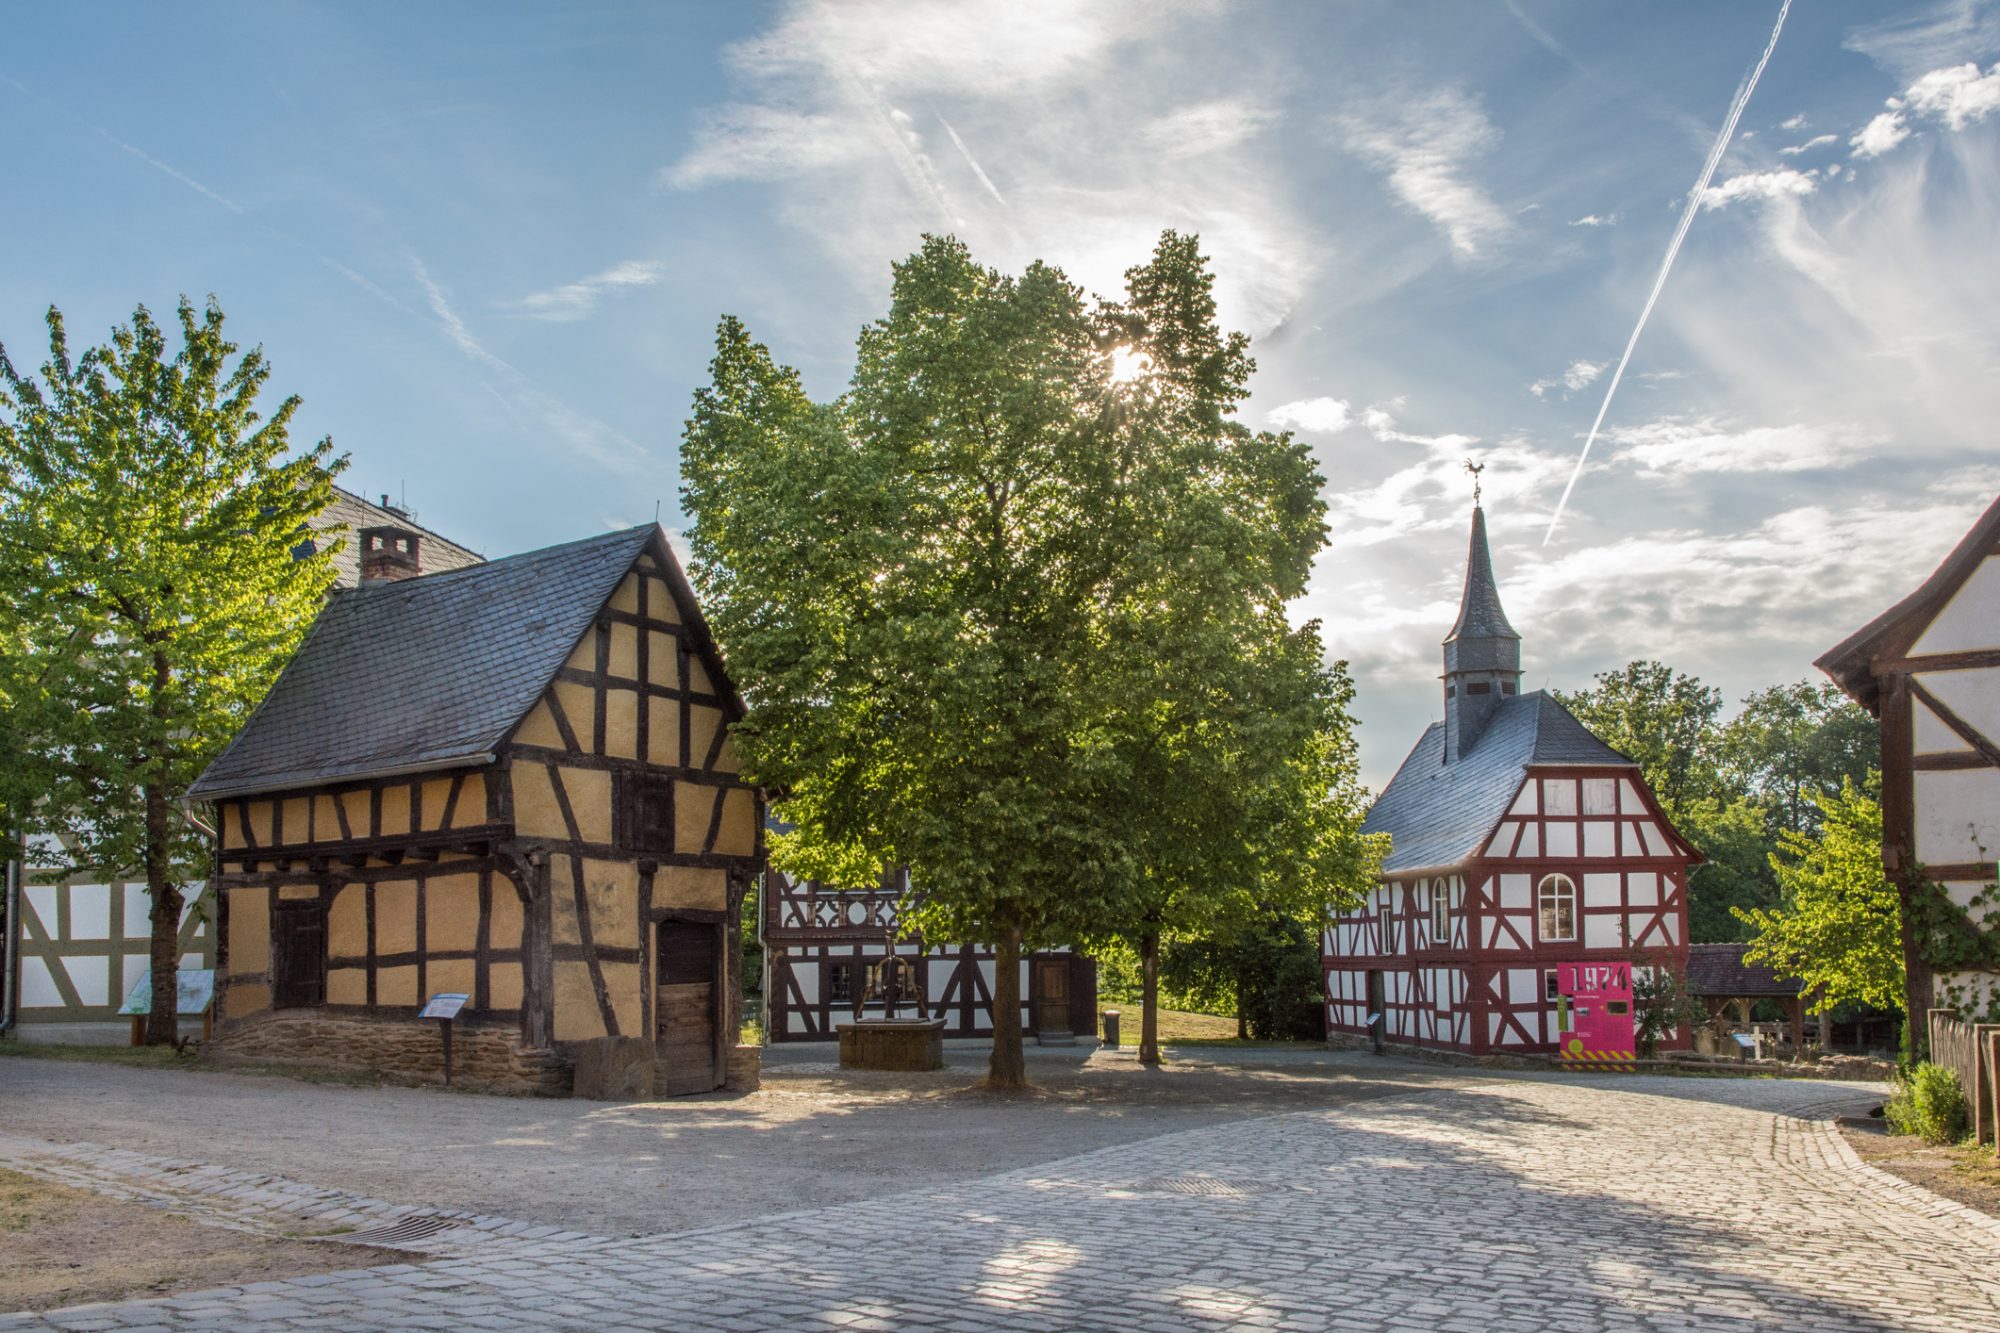 Dorfplatz im Sommer. Man sieht die Schmiede aus Weinbach, die Kirche aus Niederhörlen und die Linde mit dichtem Blätterdach.